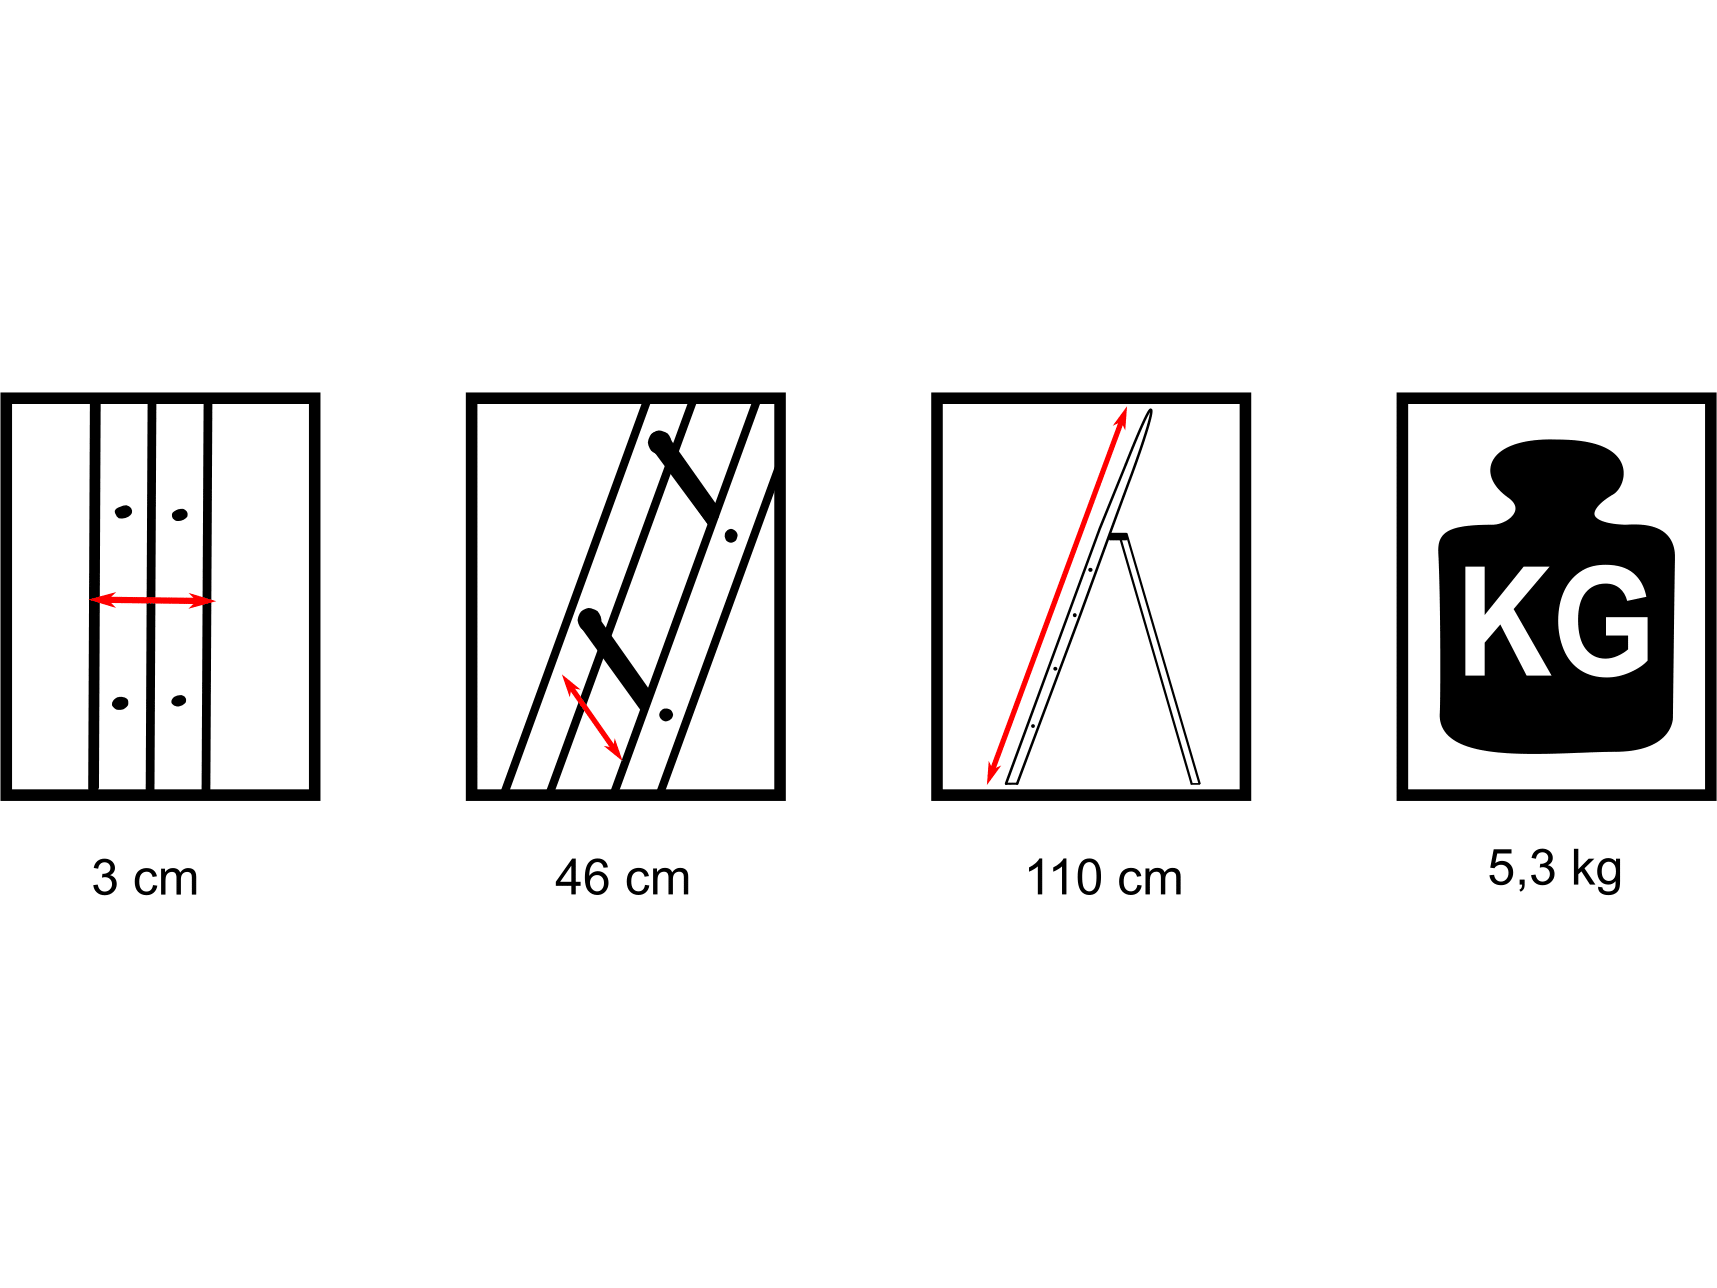 drabest-minifero-ladder-met-3-treden